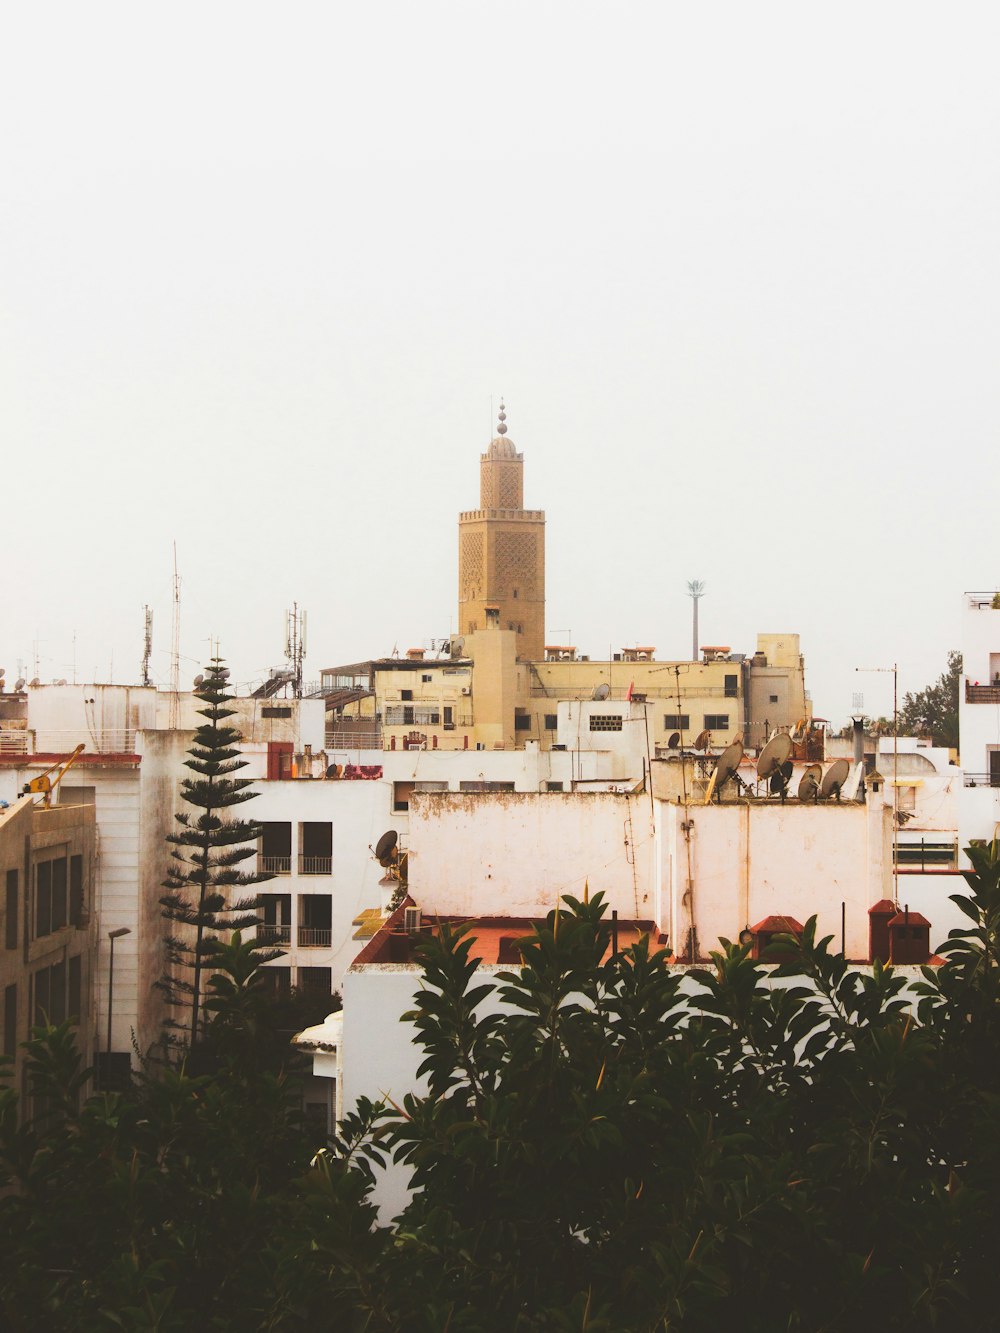 Una vista de una ciudad con edificios altos y una torre del reloj